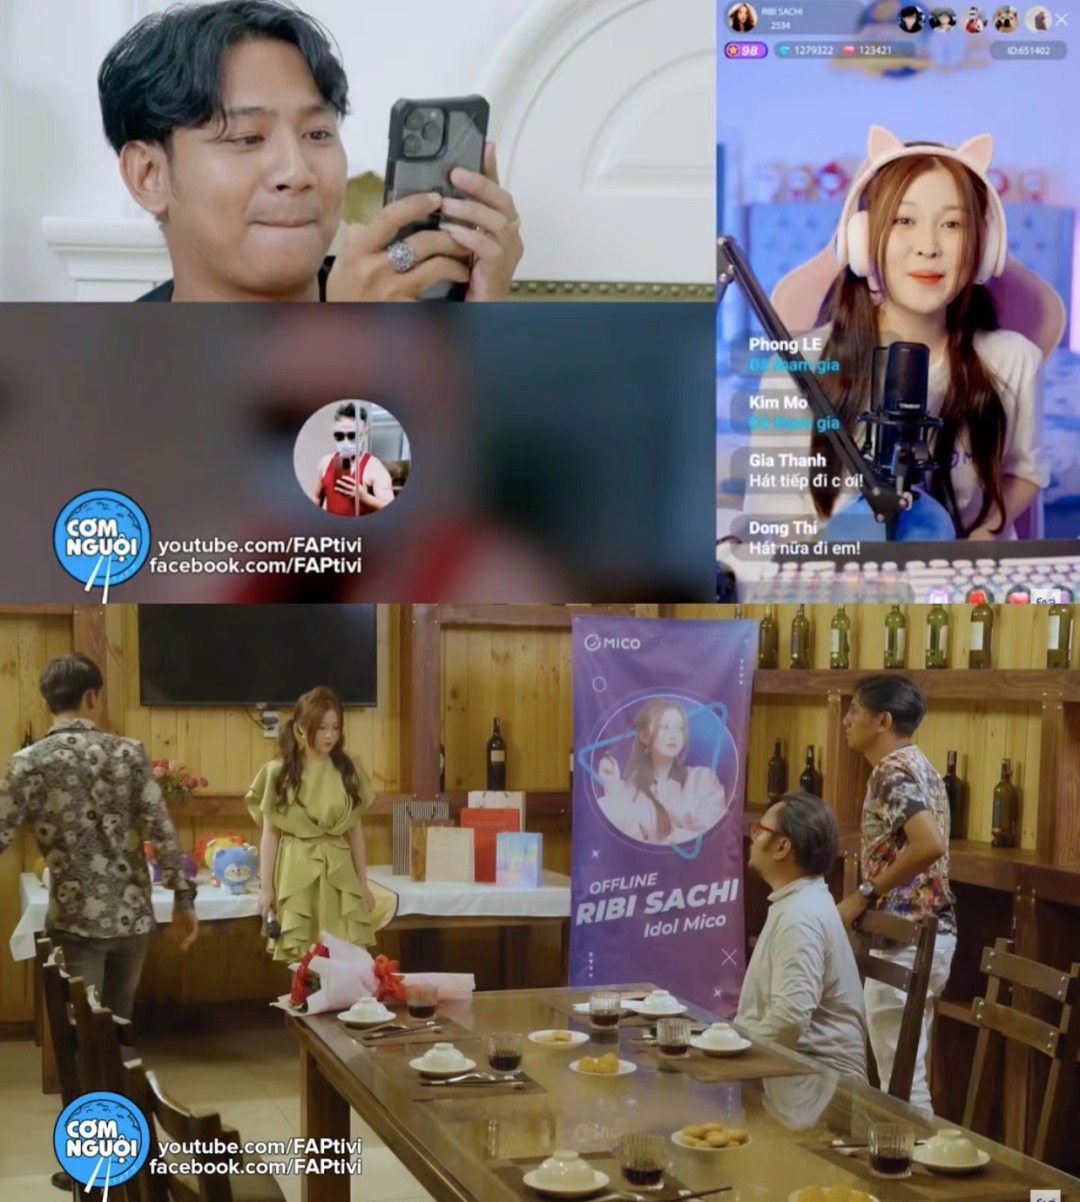 越南顶流YouTuber团体FAPtv拍摄的微电影